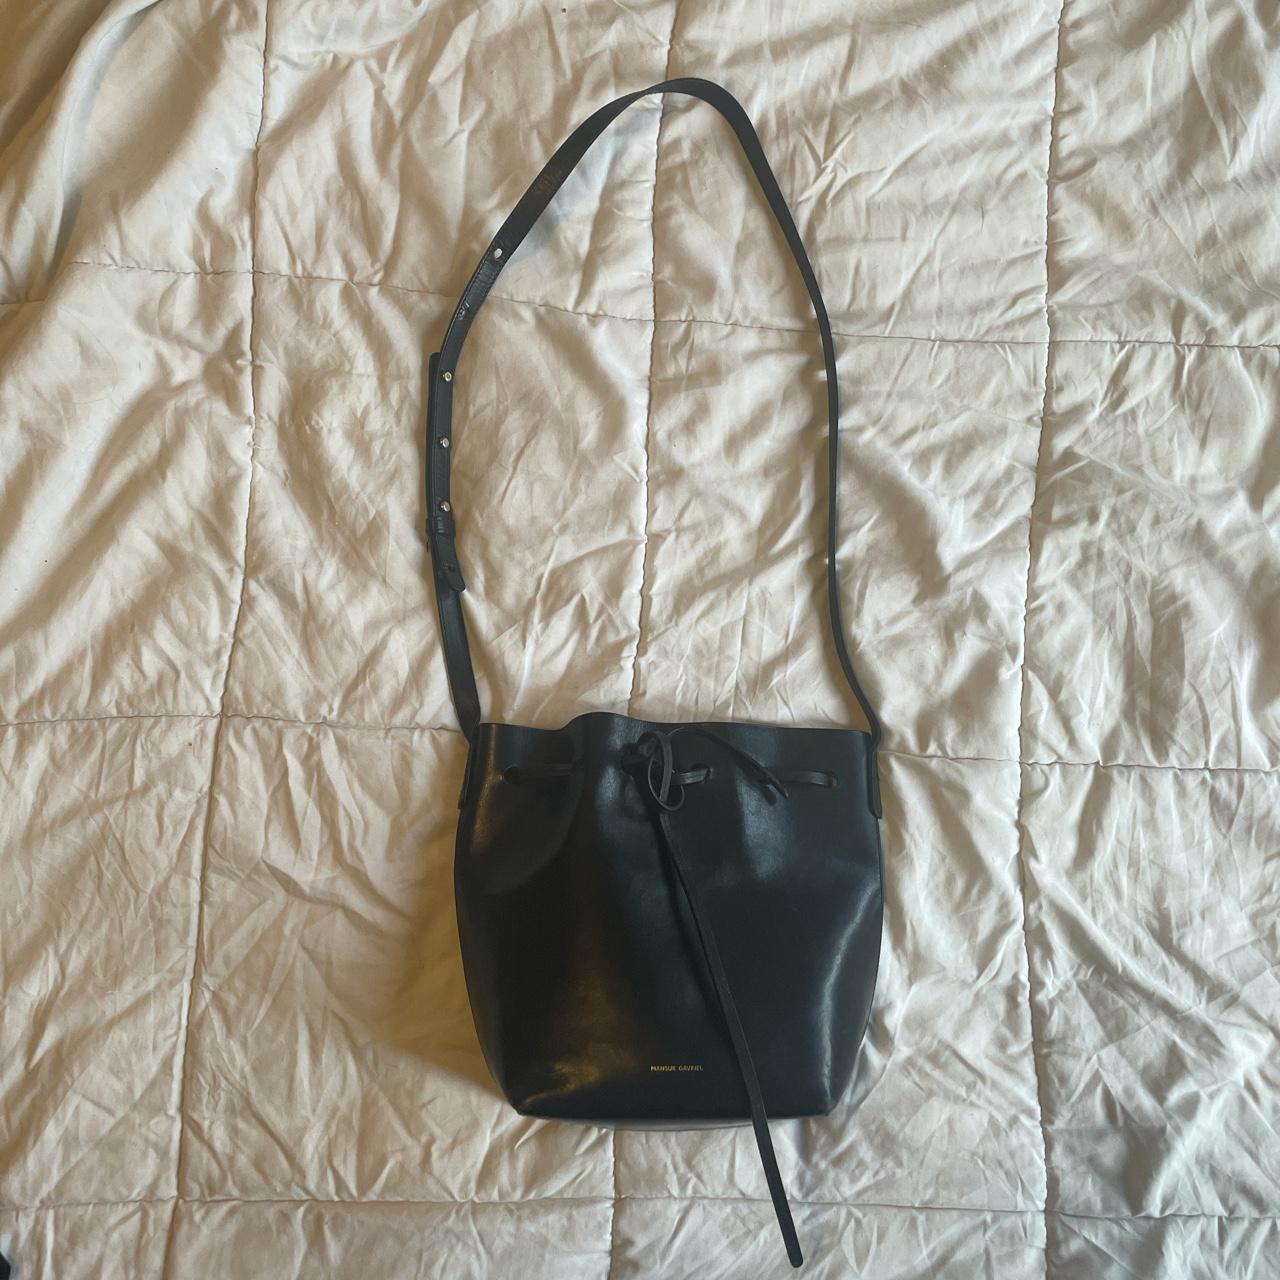 Product Image 1 - Mansur Gavriel black bucket bag
10.5”